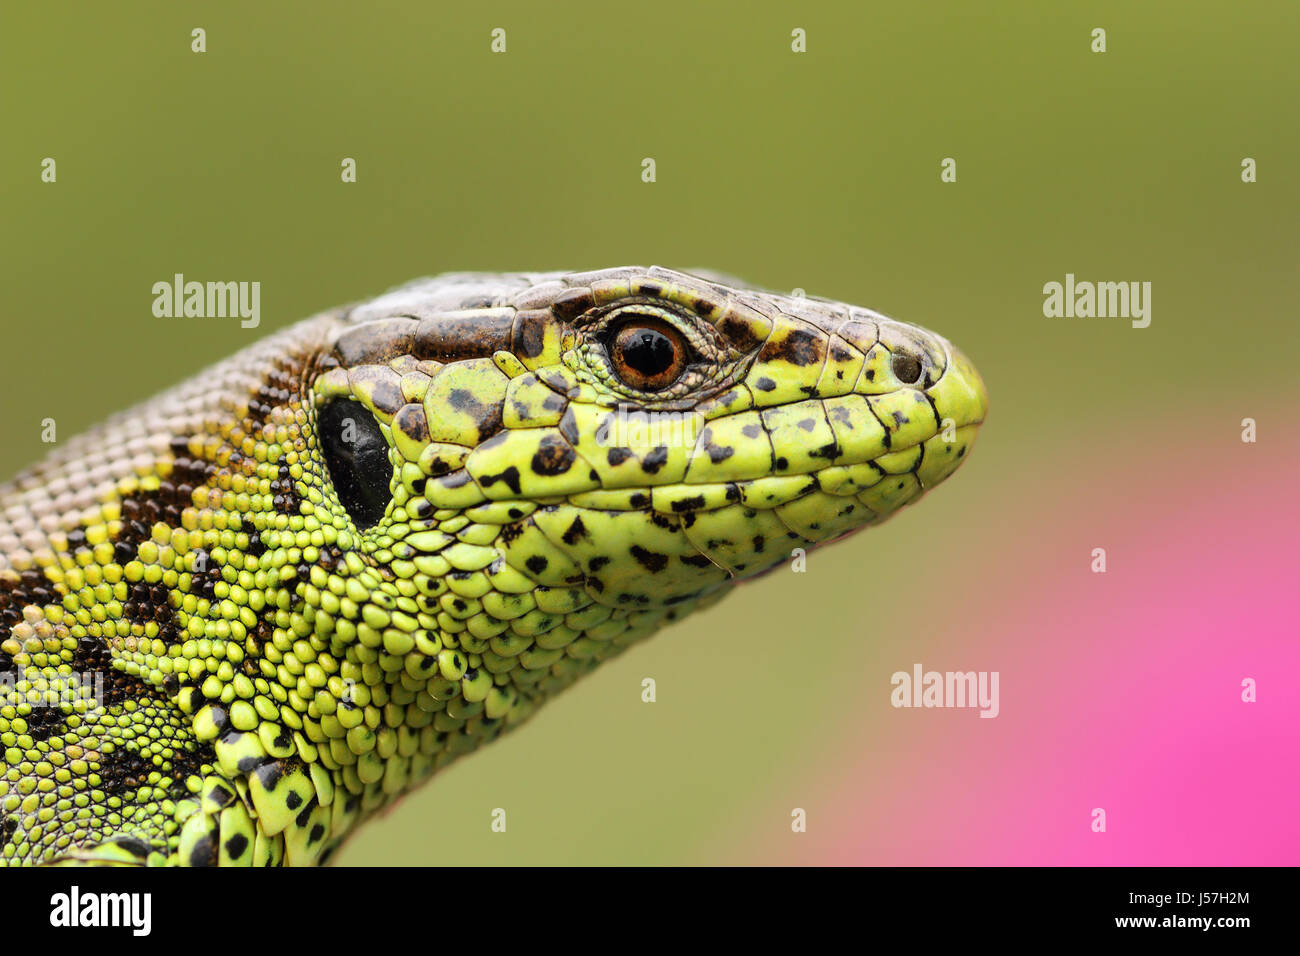 https://c8.alamy.com/comp/J57H2M/portrait-of-beautiful-male-sand-lizard-lacerta-agilis-detail-on-scales-J57H2M.jpg